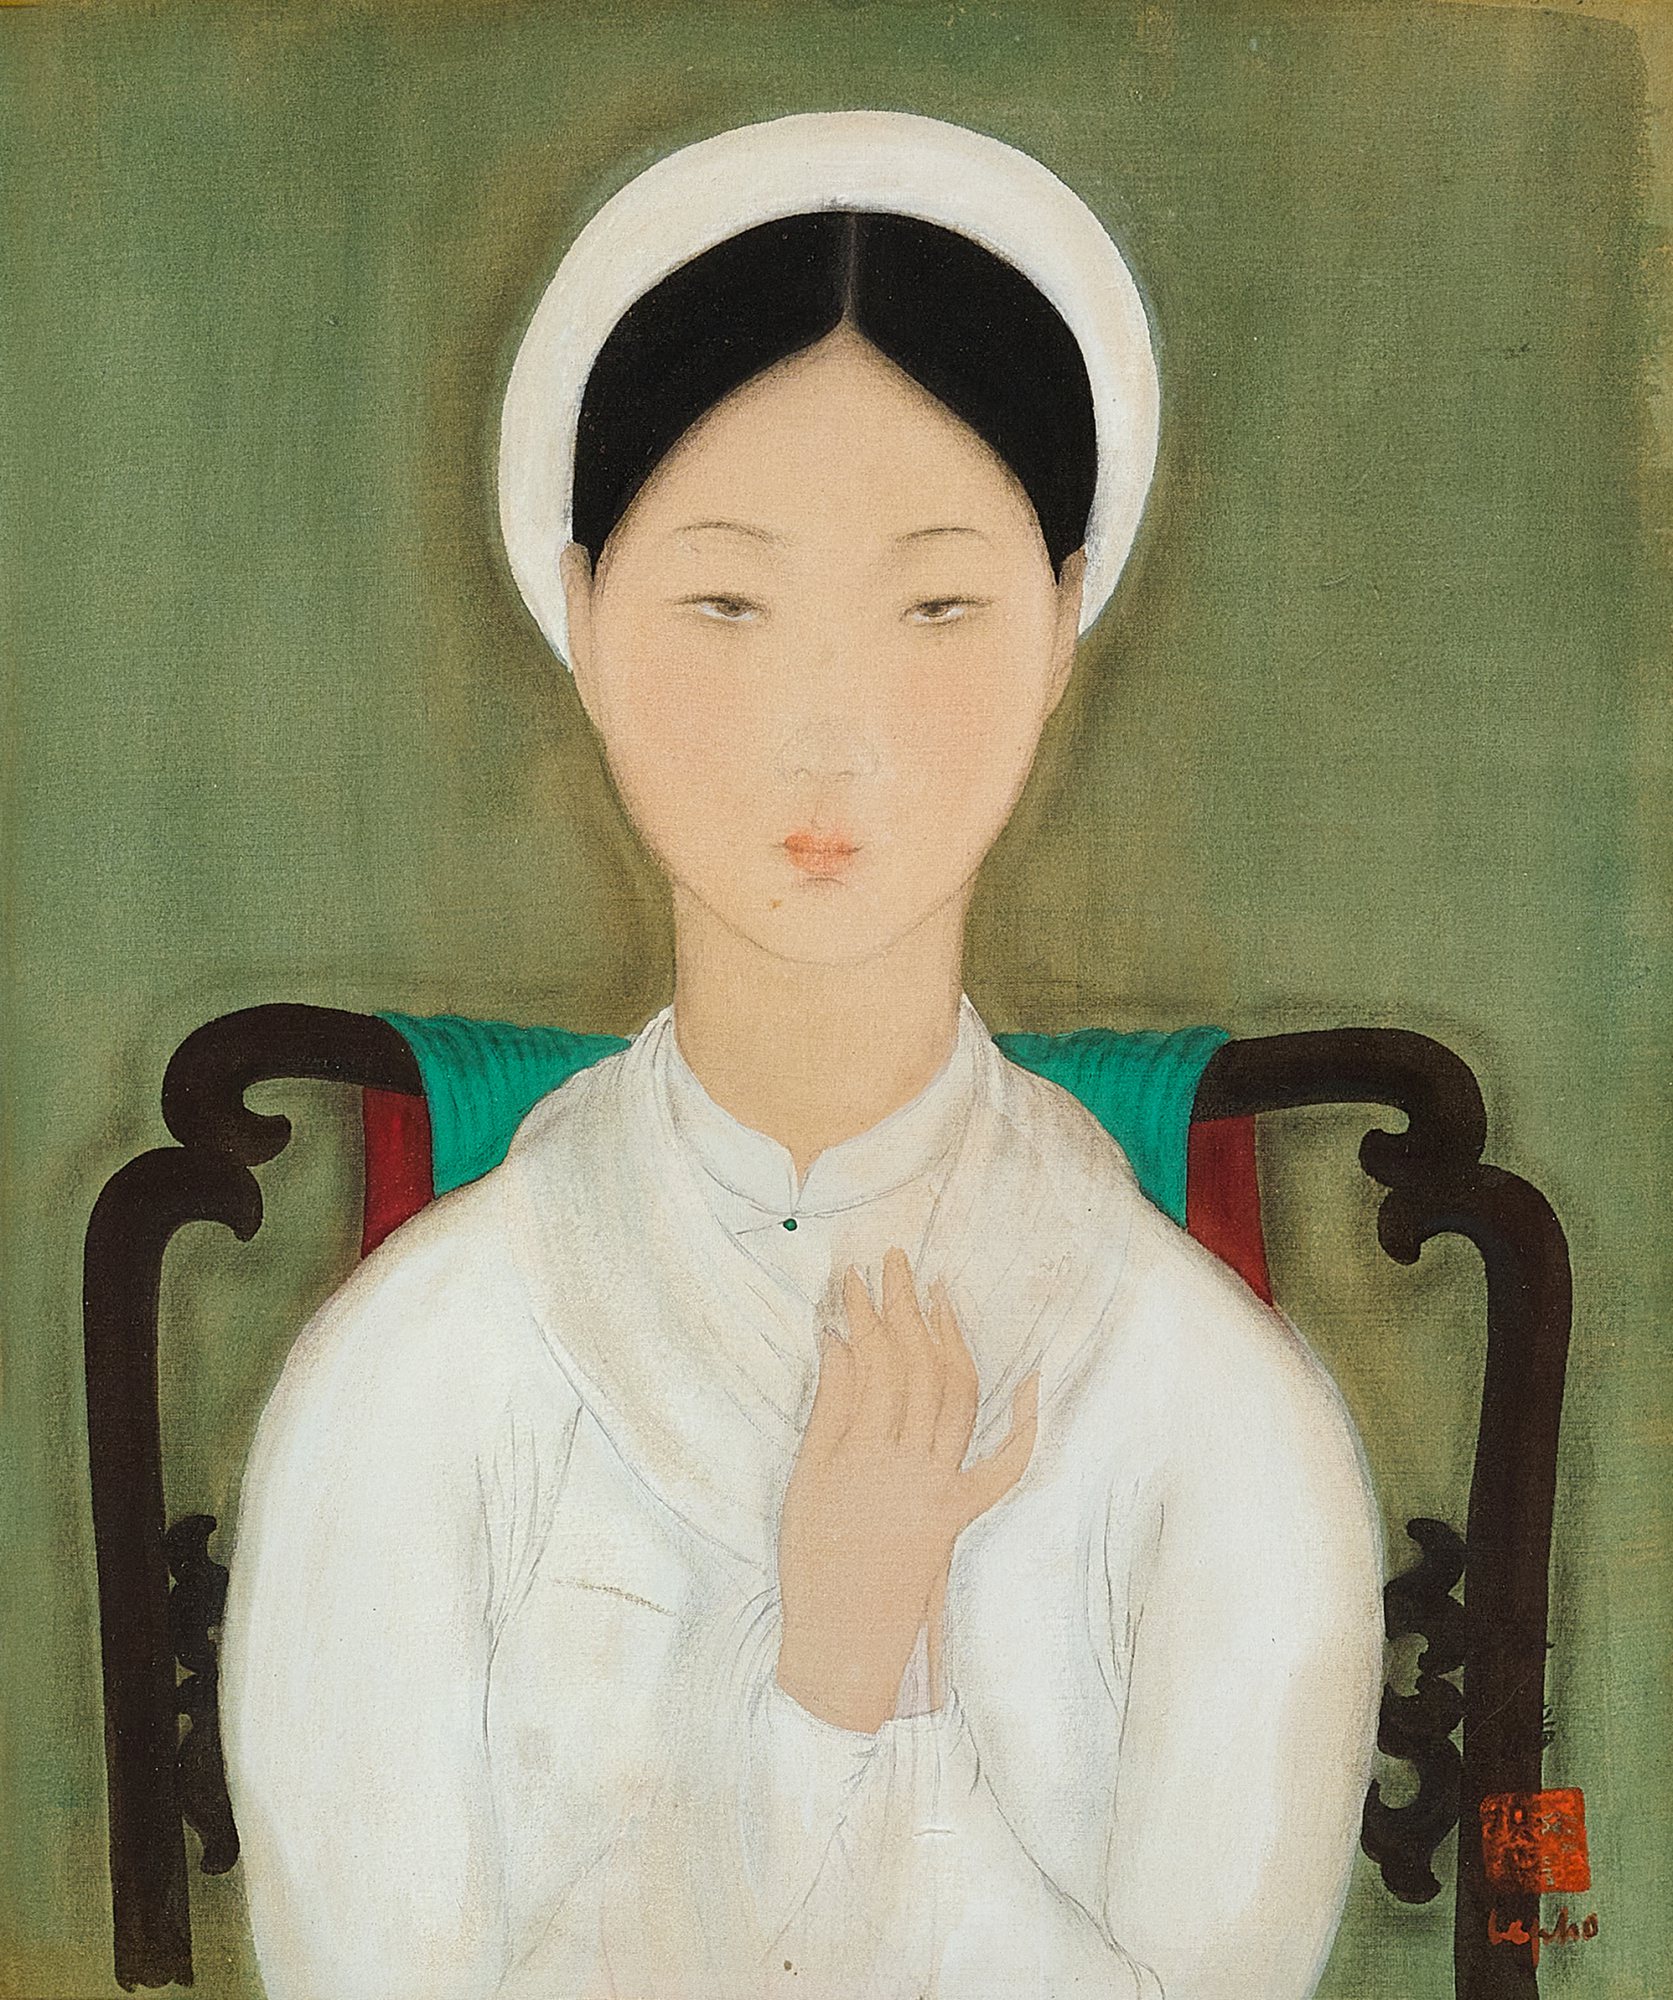 Lê Phổ là một trong những họa sĩ xuất sắc nhất của Việt Nam. Tác phẩm của ông không chỉ tôn vinh vẻ đẹp nữ tính mà còn thể hiện sự tinh tế và tầm nhìn sâu sắc trong nghệ thuật. Hãy chiêm ngưỡng những bức tranh đẹp mắt của Lê Phổ!